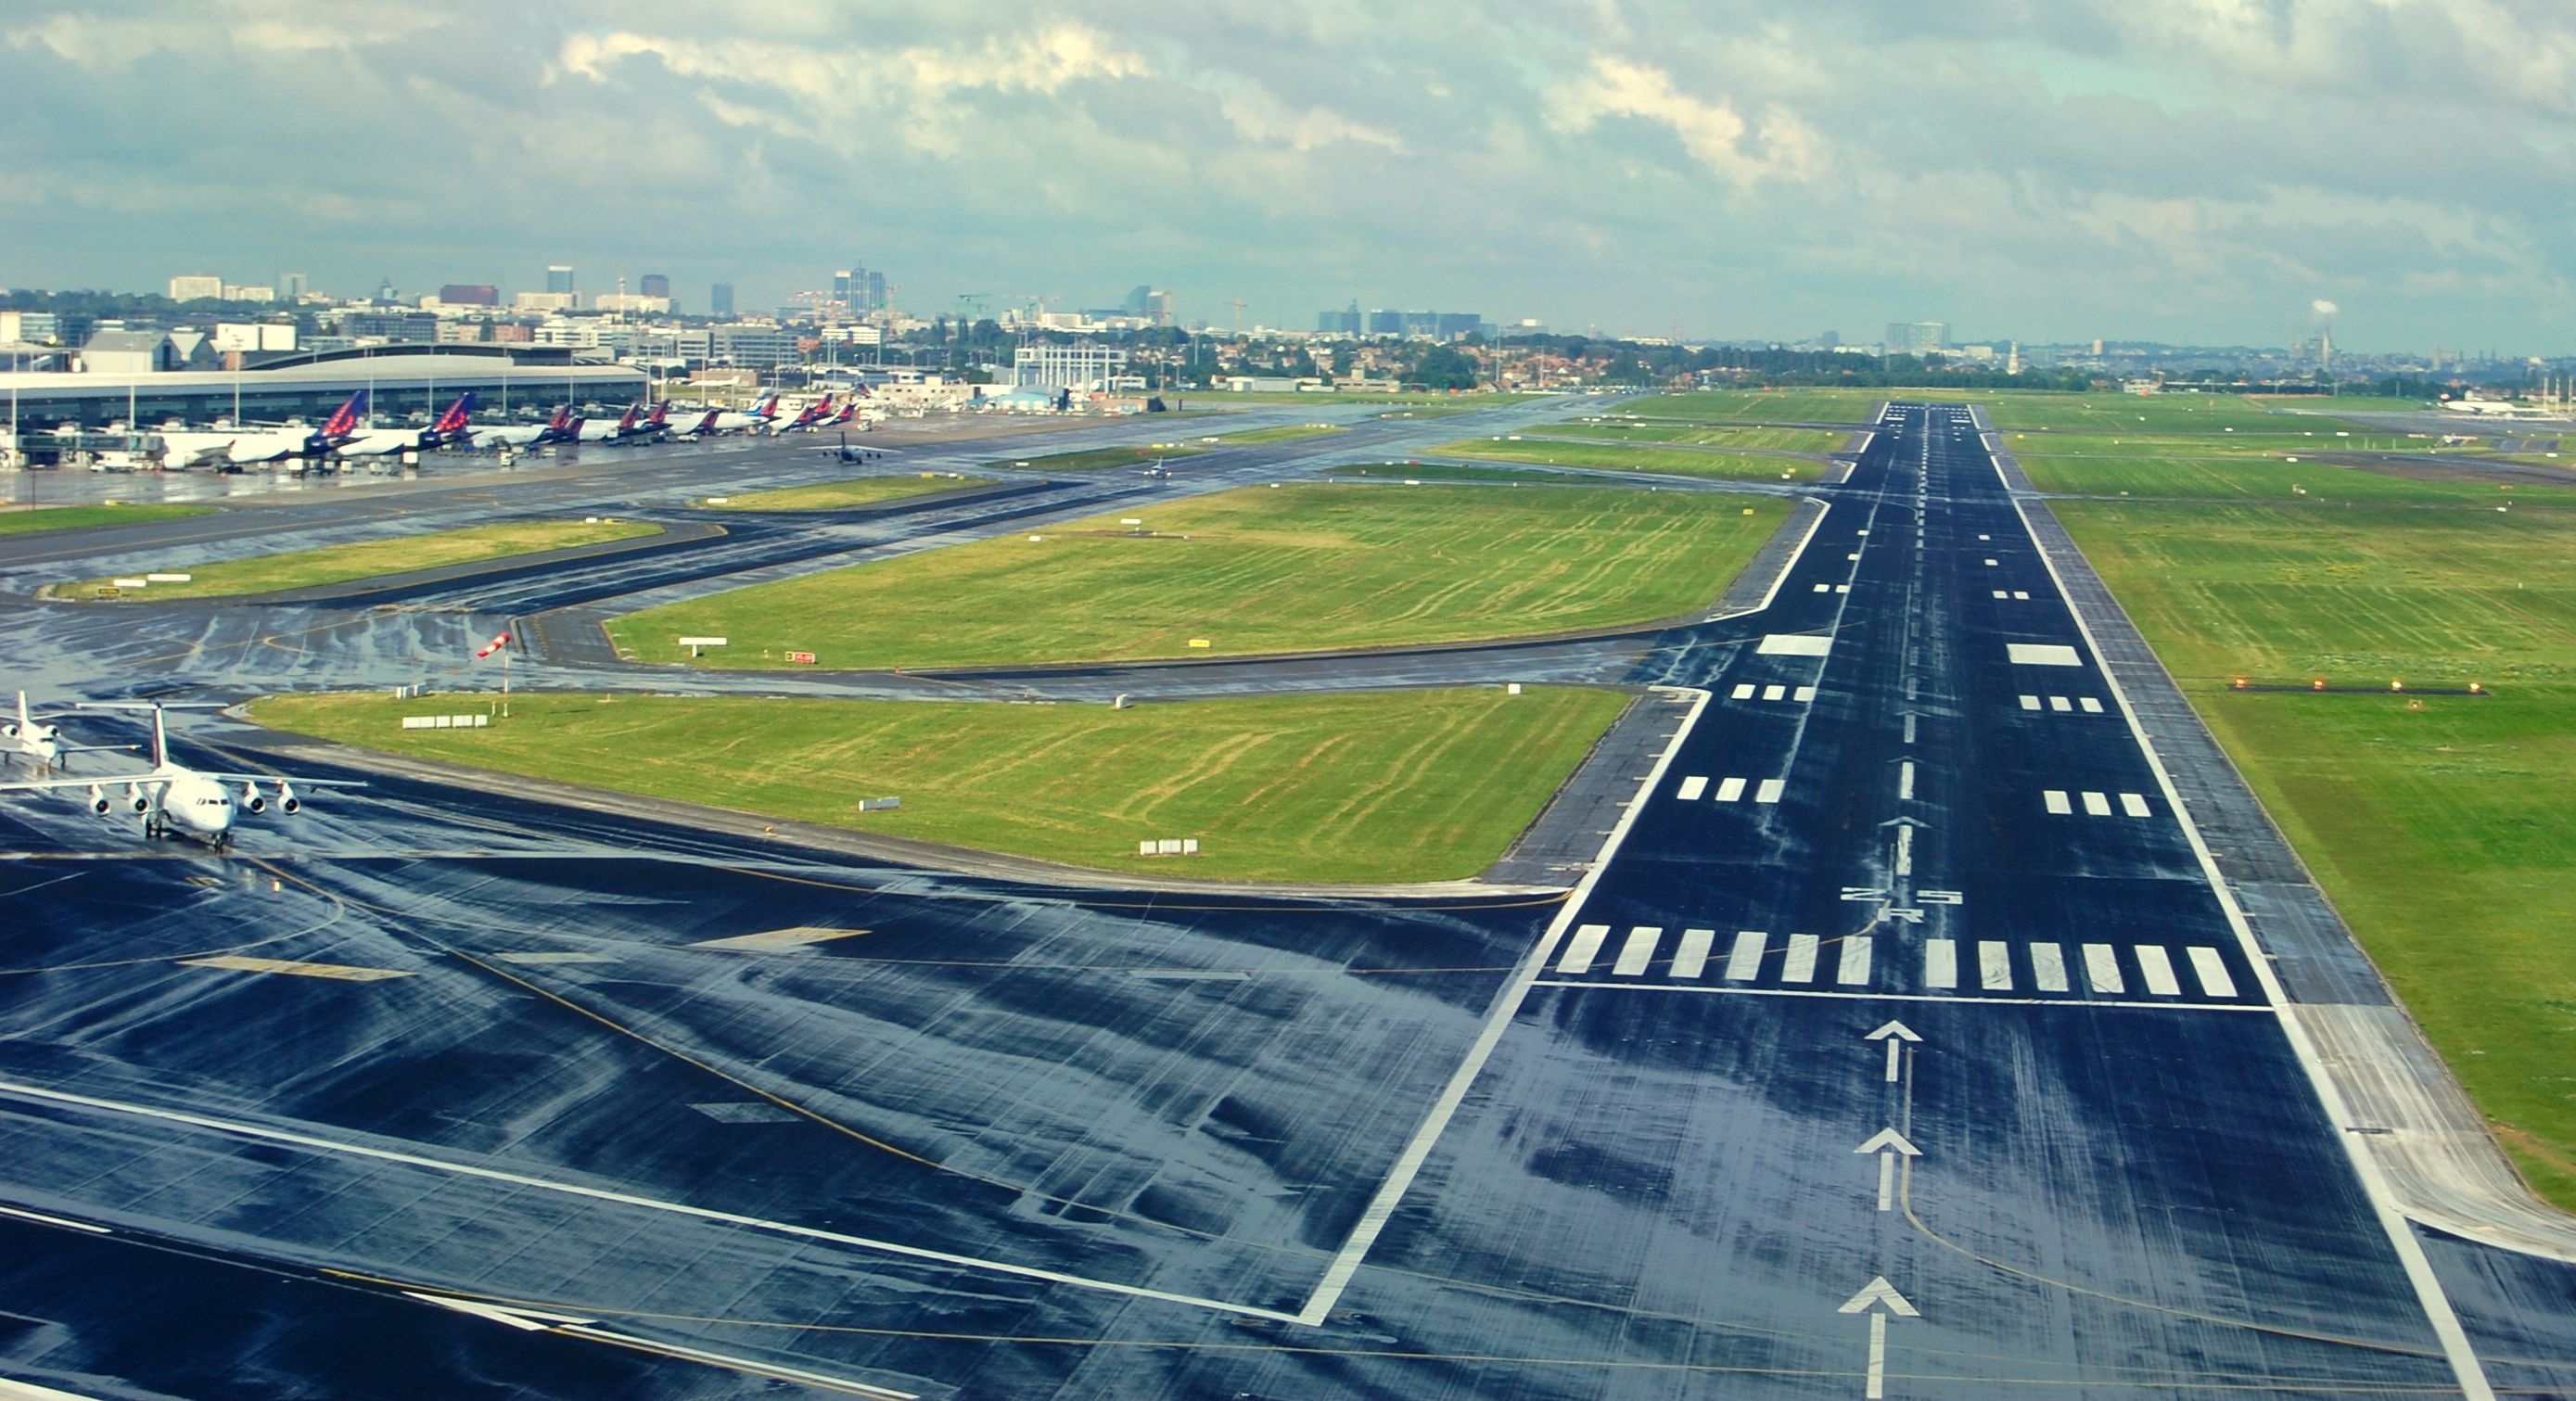 Brussels_Airport_Runway_25_R